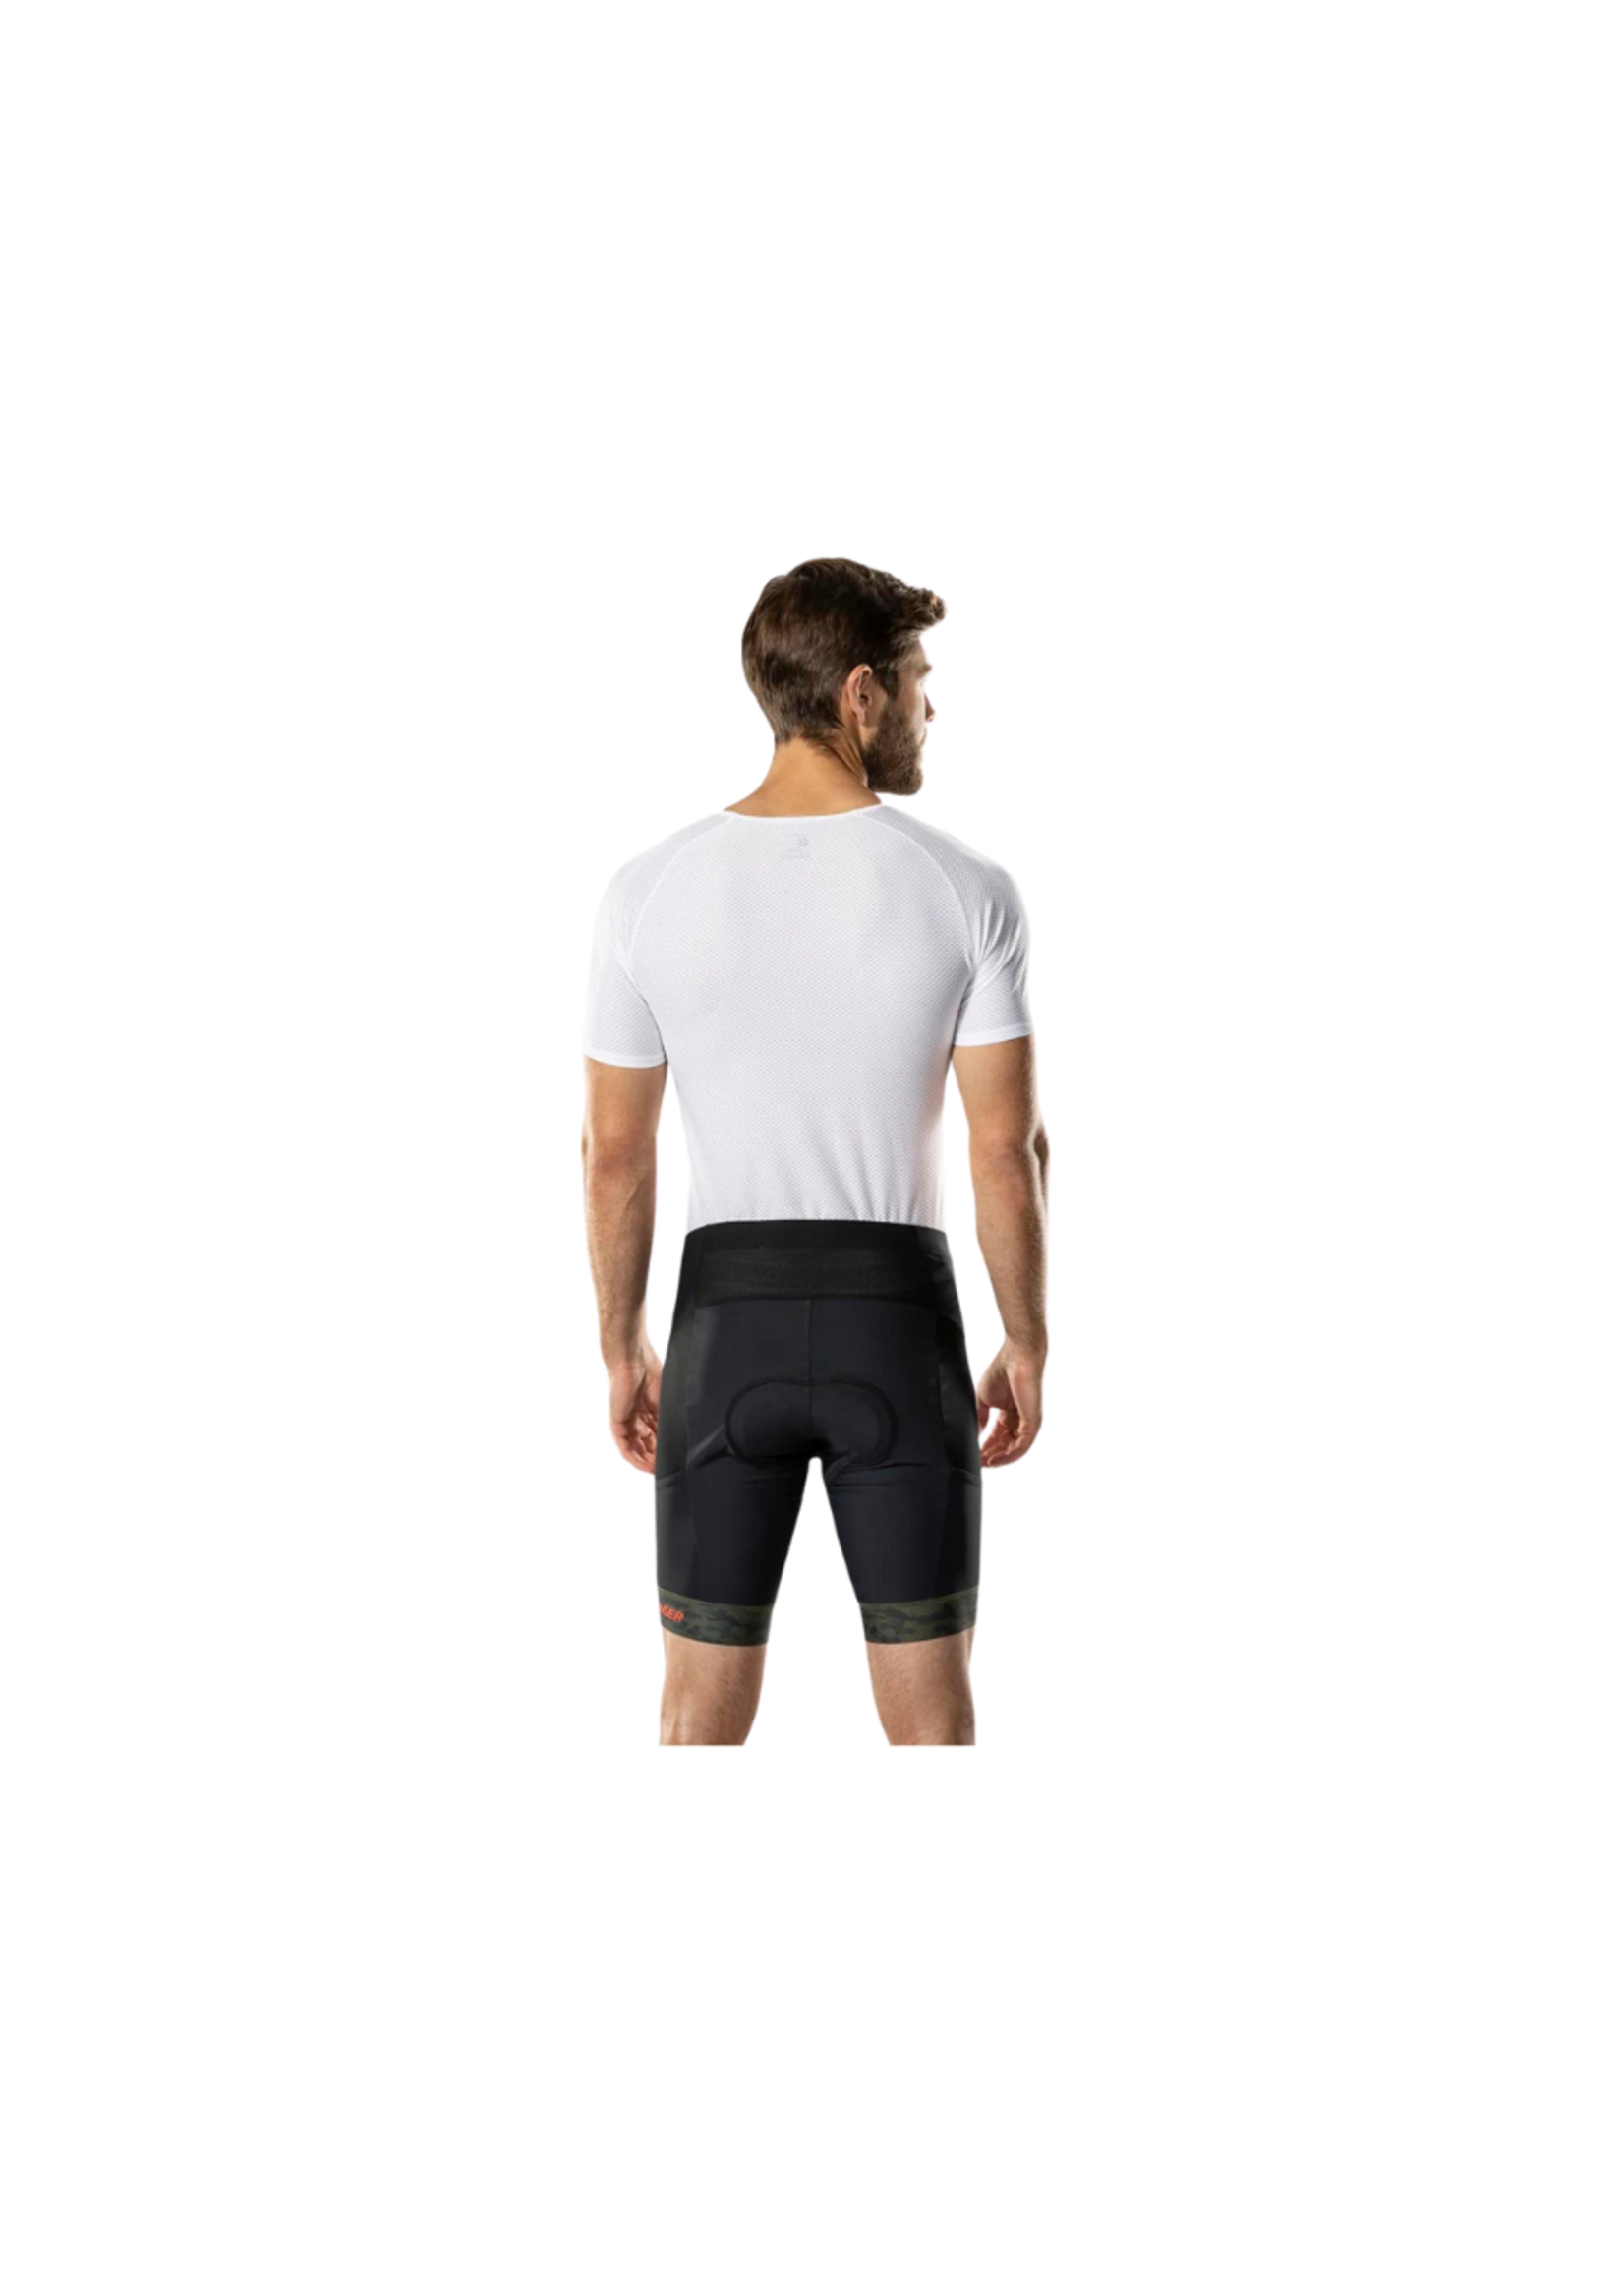 TREK Bontrager Troslo inForm Cycling Liner Shorts Black